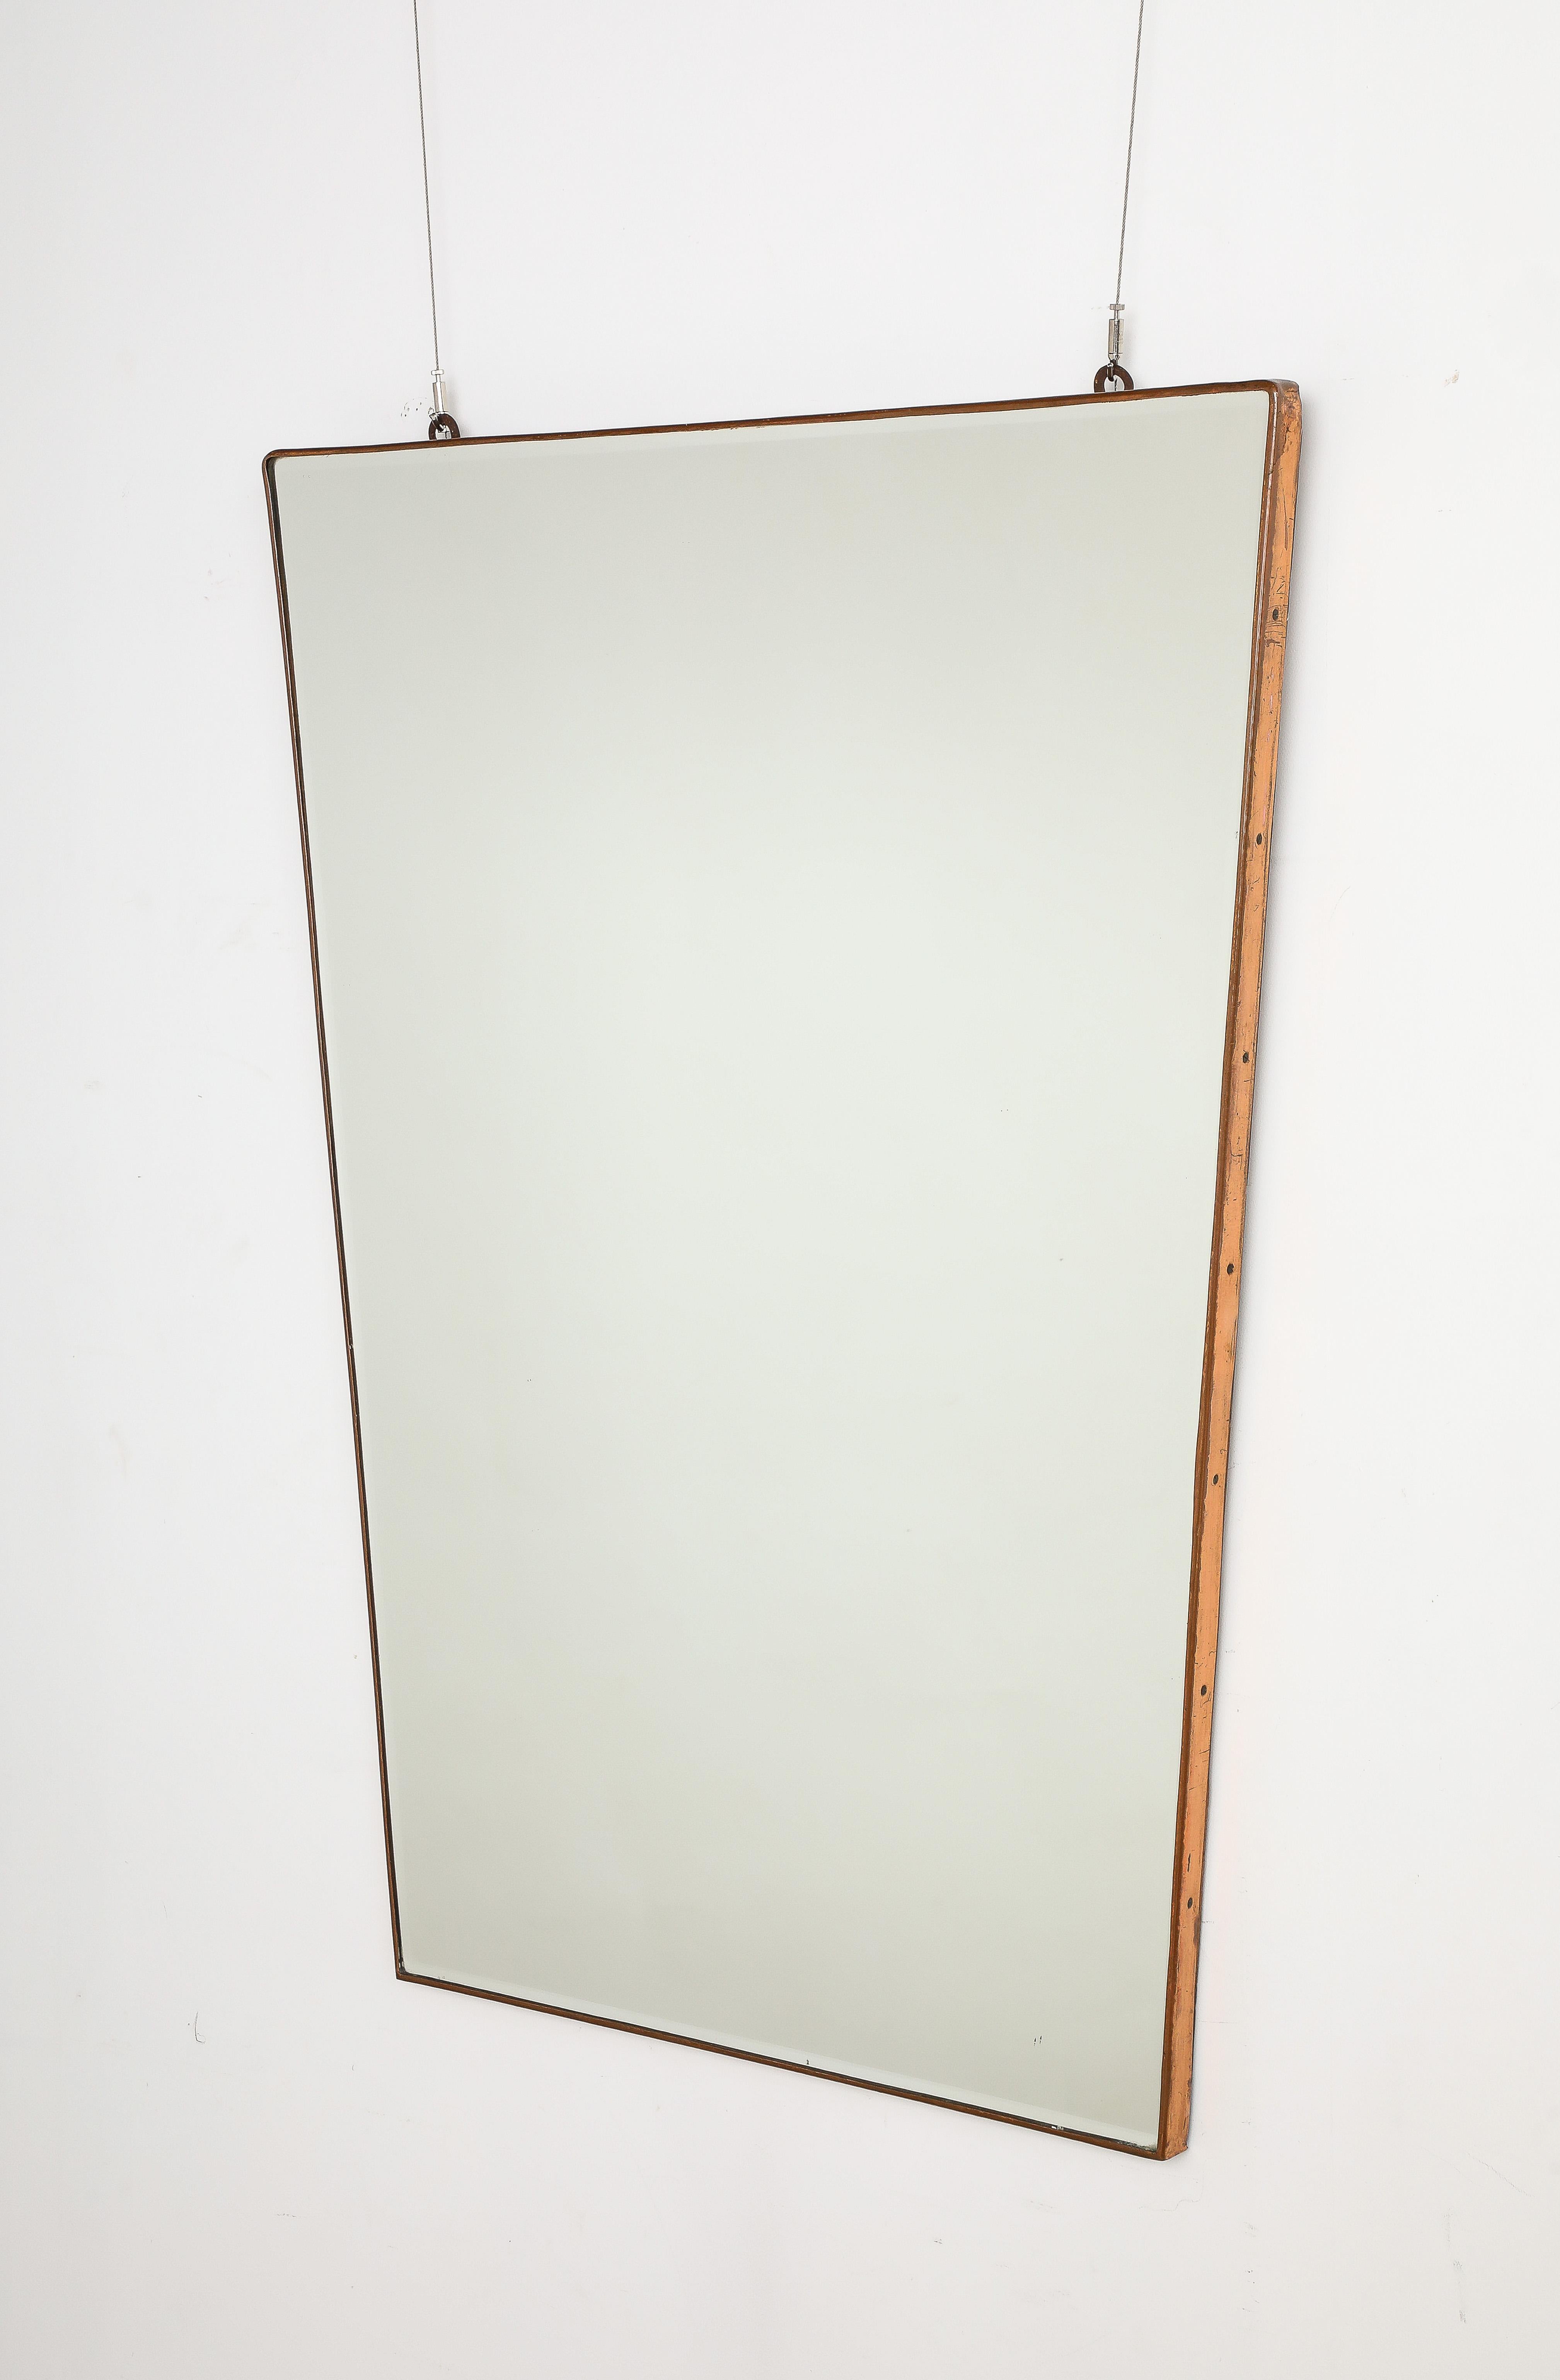 Ein seltener, trapezförmiger Spiegel mit Kupferrahmen von Fontana Arte, um 1940.  Der Rahmen ist oben am breitesten und verjüngt sich zum Boden hin.  Von sehr einfacher und eleganter Form.  Er ist groß und passt zu jedem Einrichtungsstil, ob antik,